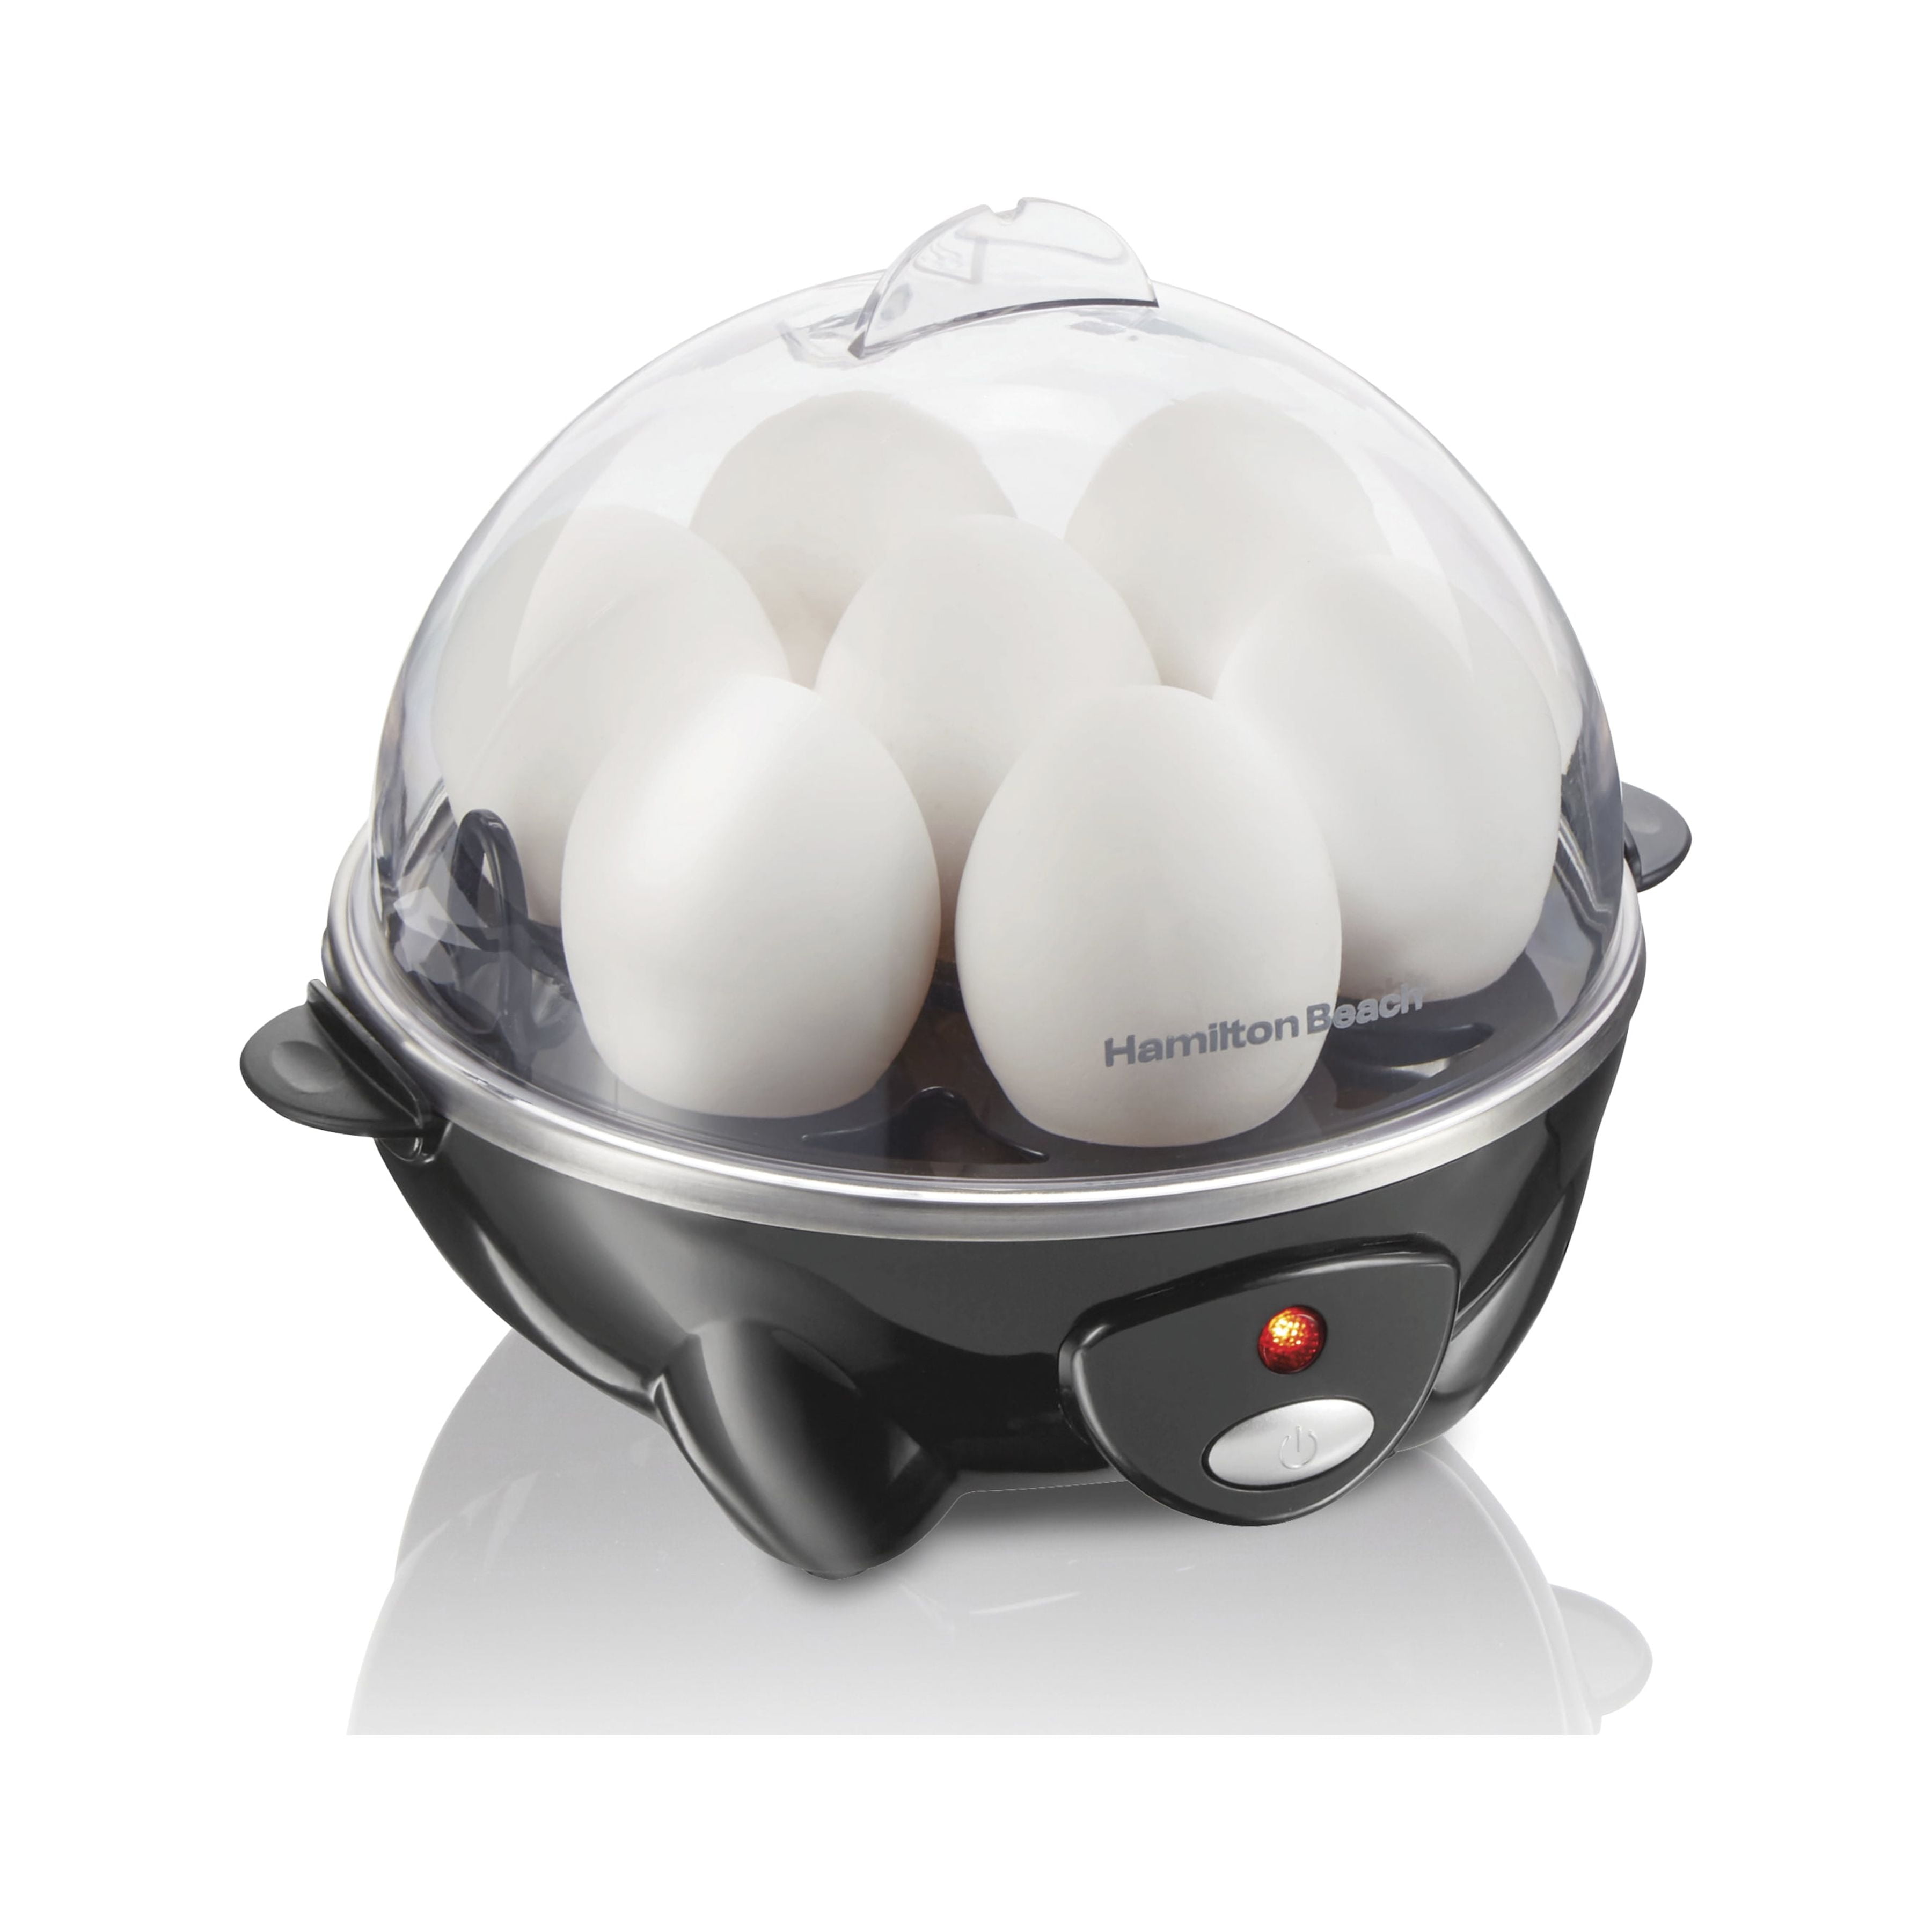 Seenda Egg Steamer,Egg Cooker,Rapid Electric Egg Maker,Egg Boiler,Egg  Cookers With Automatic Shut Off,7 Egg Capacity Egg Boiler,Multifunction  Heated Milk,Heated Food 